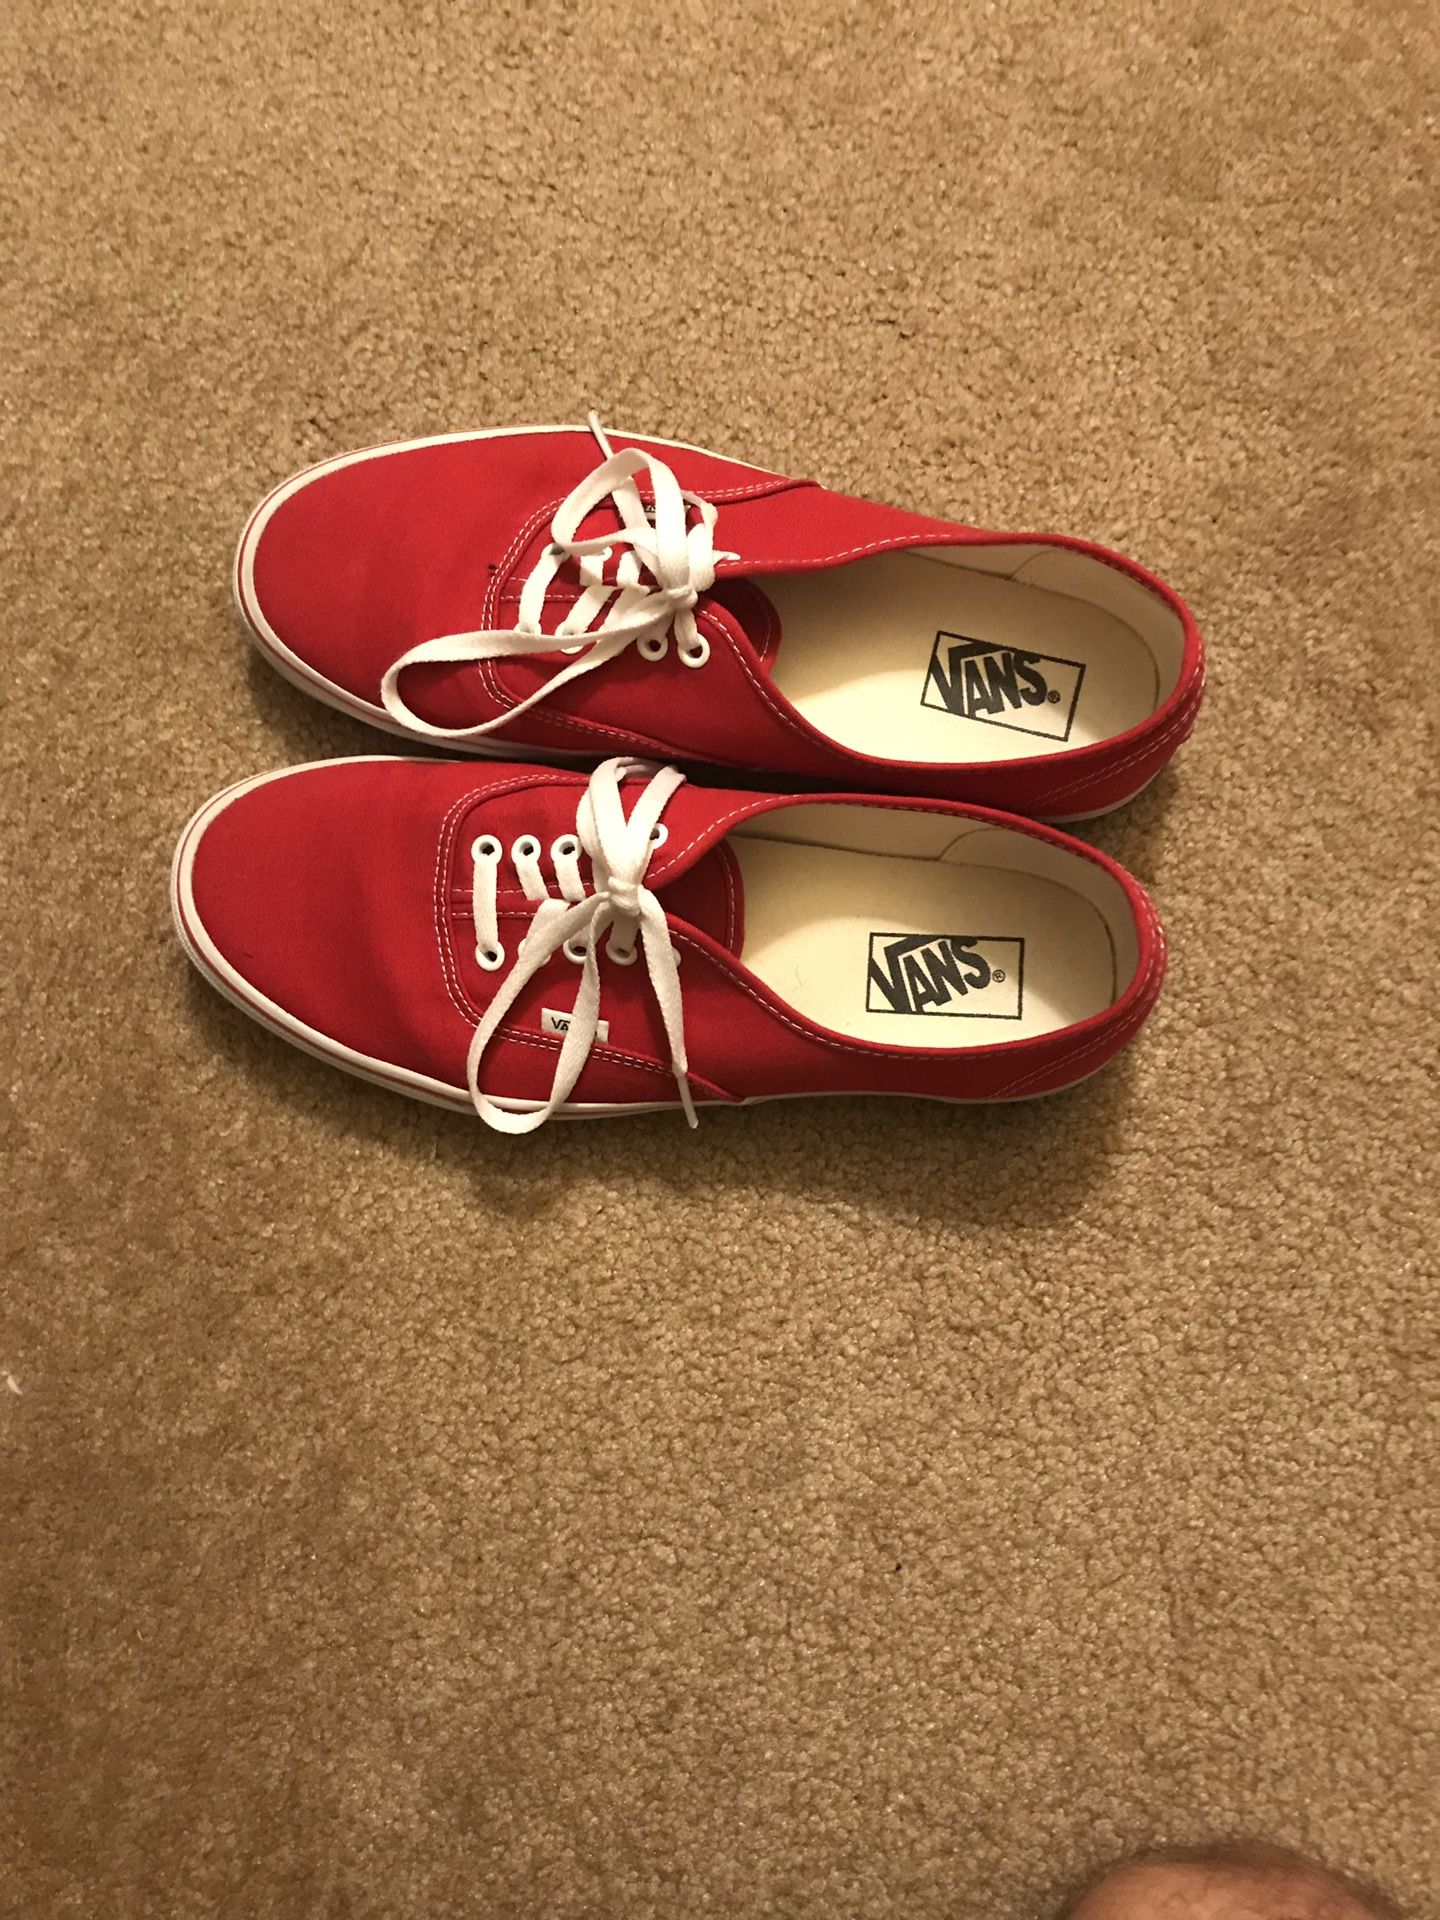 Red Vans Size 11.5 ($40)